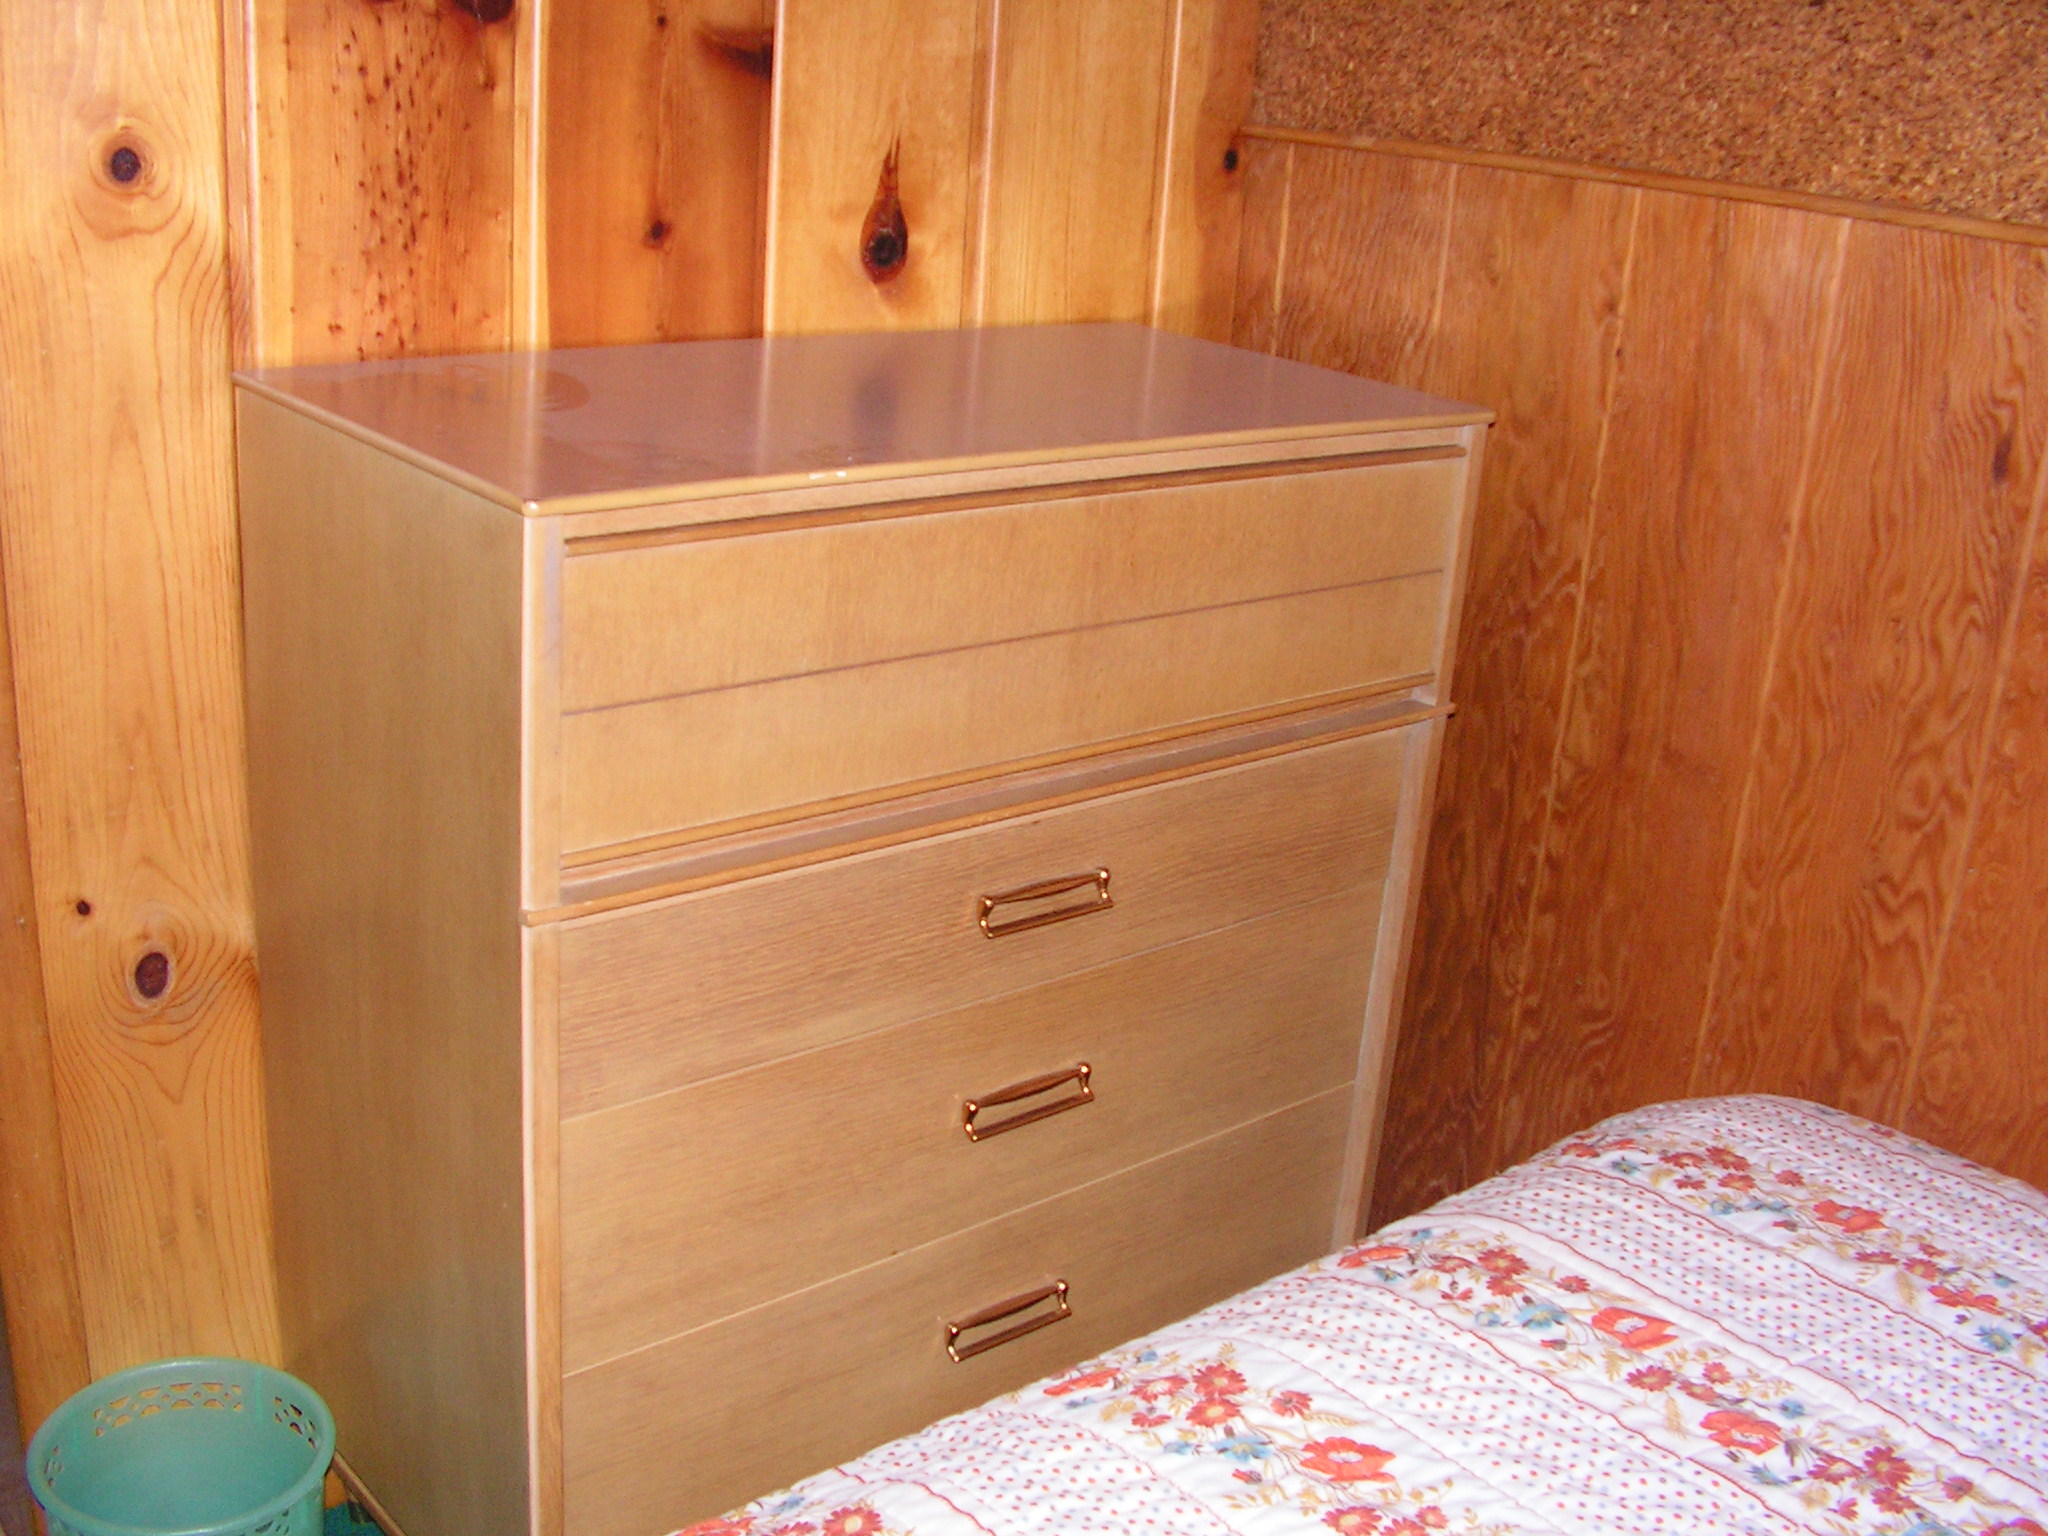 Kroehler Double Bed and Matching Dresser Set - have dresser offer